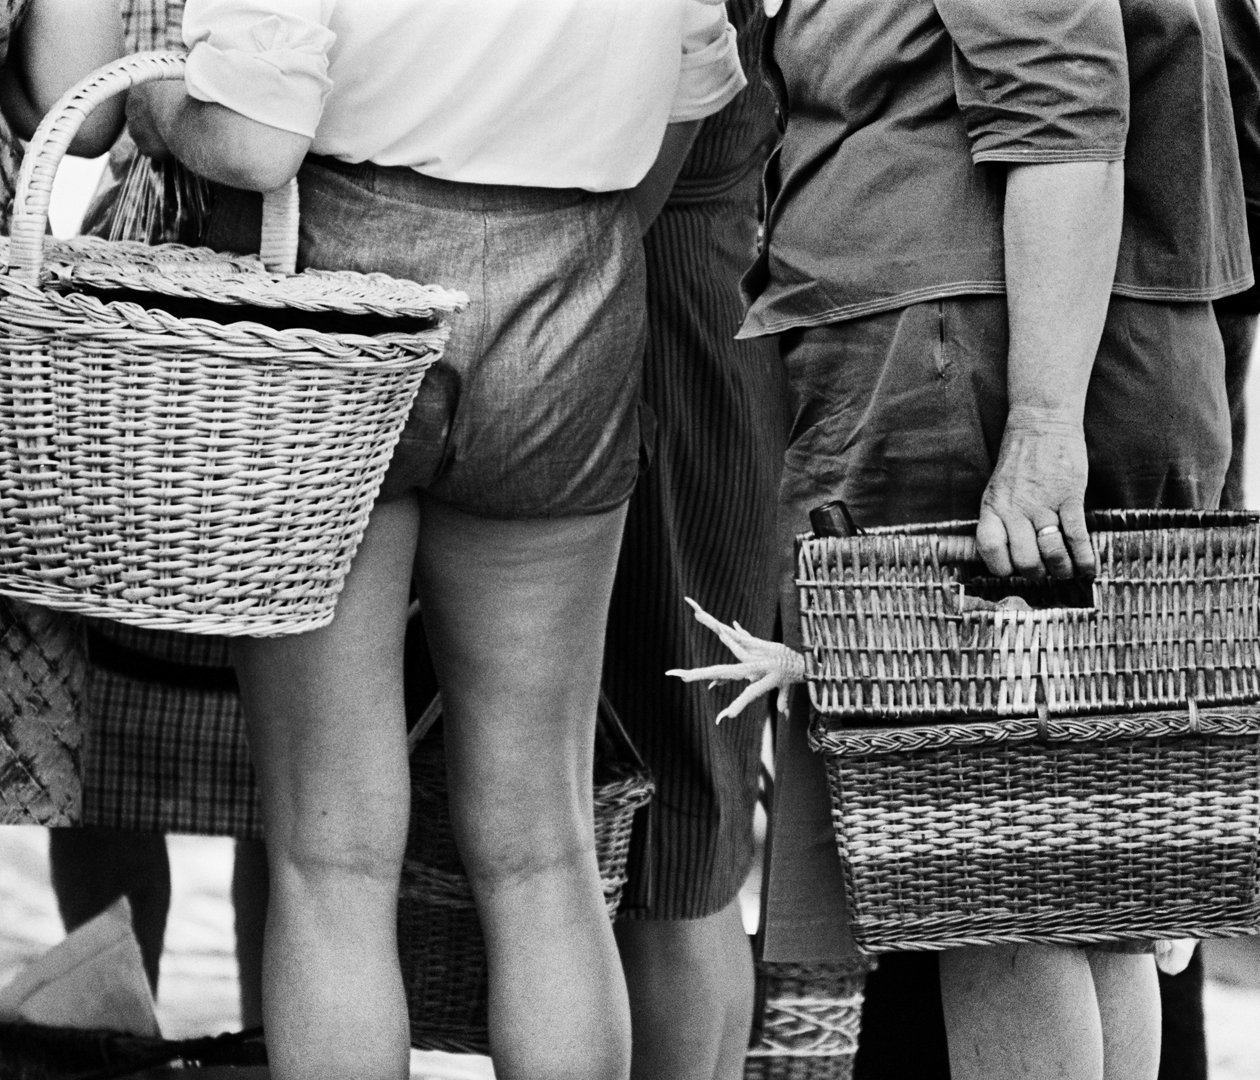 Pata que quiere tocar pierna, Banyoles, Girona, 1966